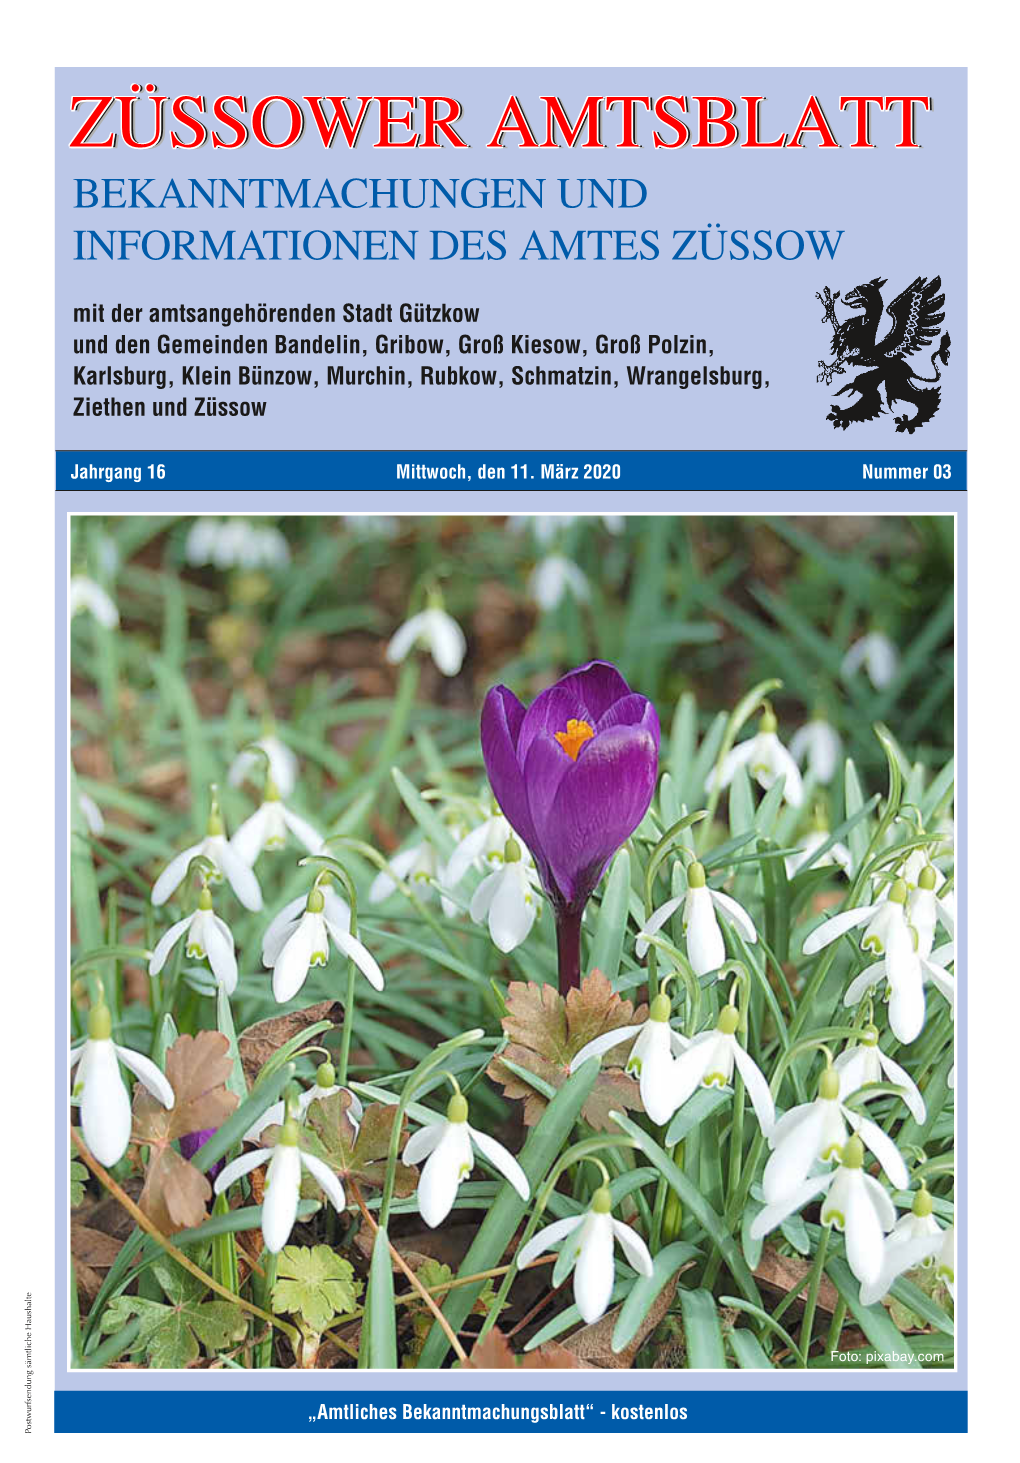 Züssower Amtsblatt Nr. 03 / 2020